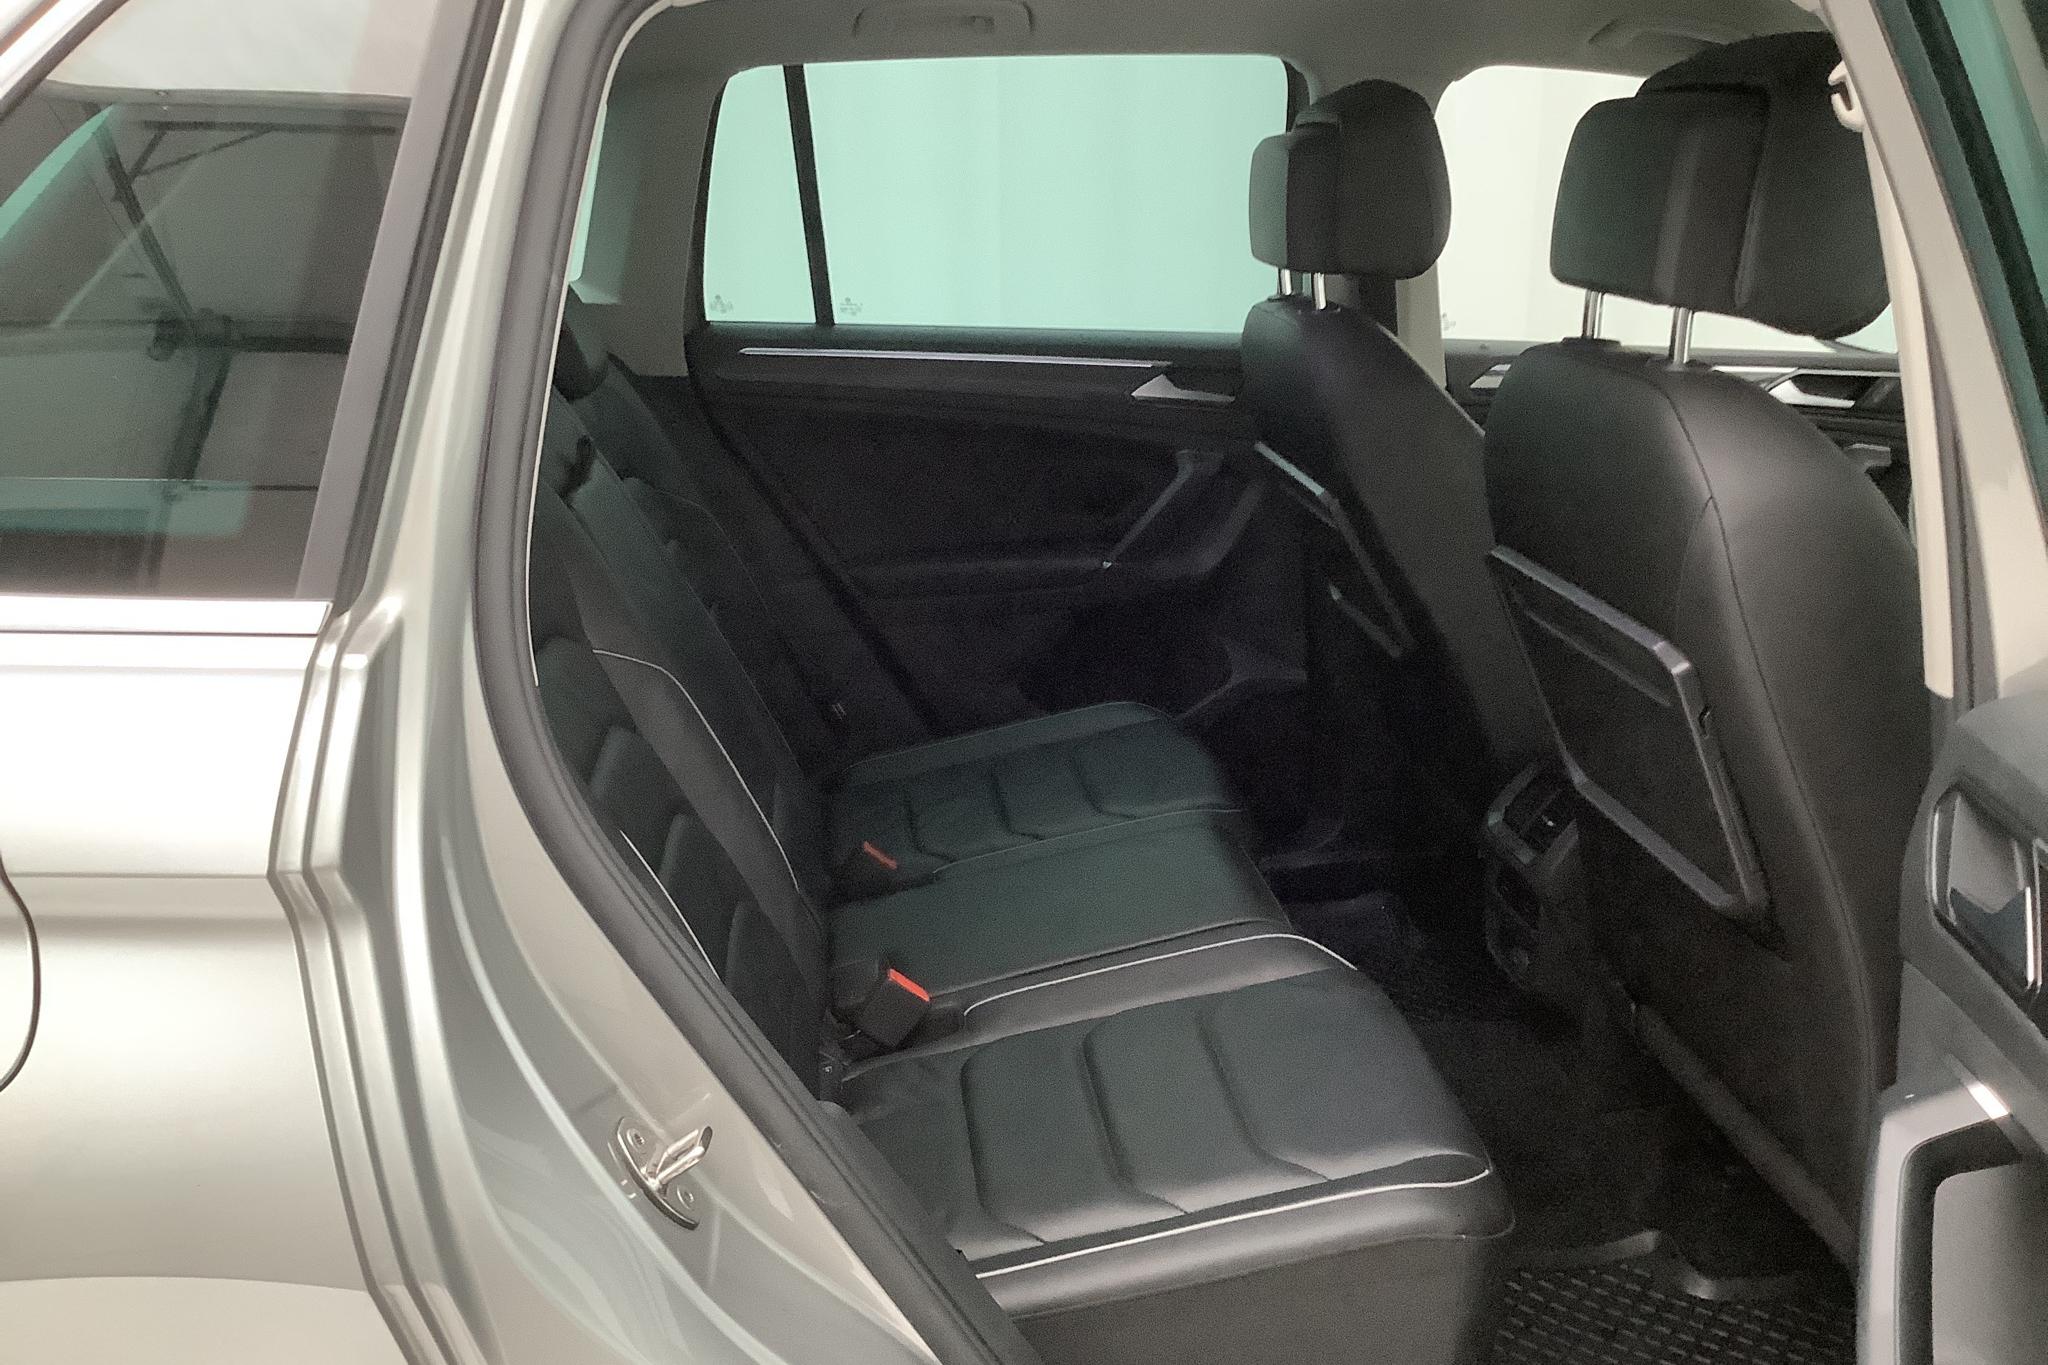 VW Tiguan 2.0 TDI 4MOTION (190hk) - 9 745 mil - Automat - silver - 2018